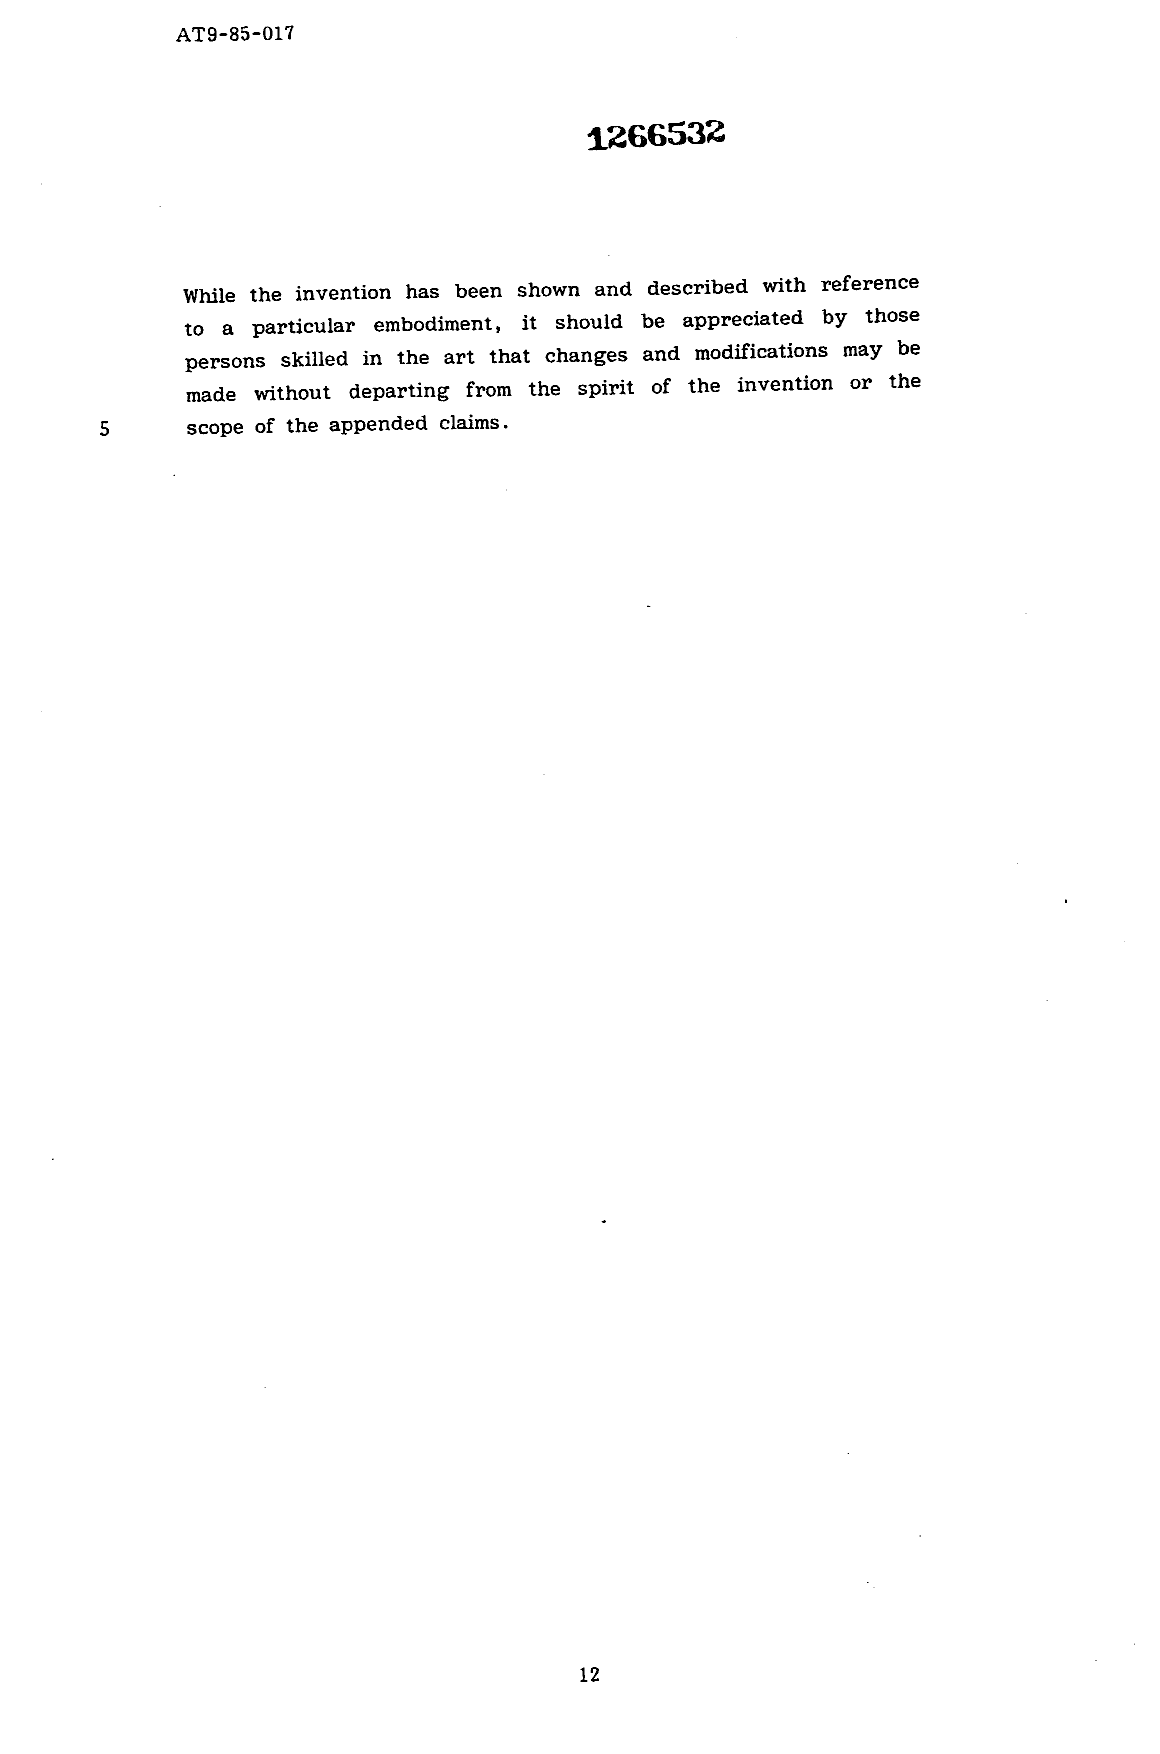 Canadian Patent Document 1266532. Description 19930918. Image 12 of 12